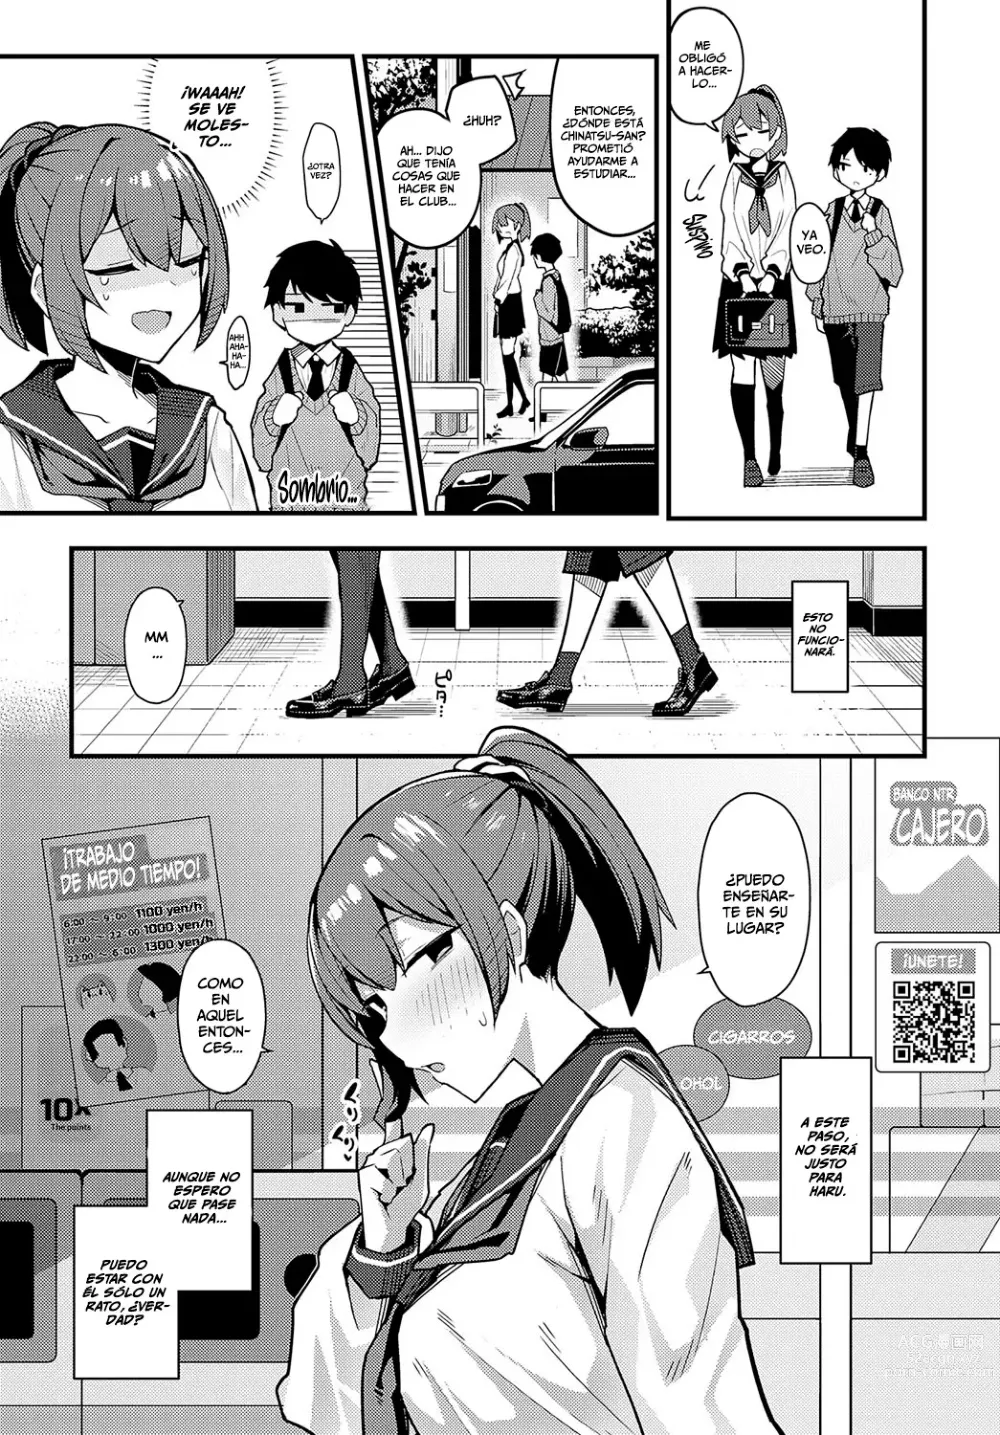 Page 5 of manga Solo Una Cosa